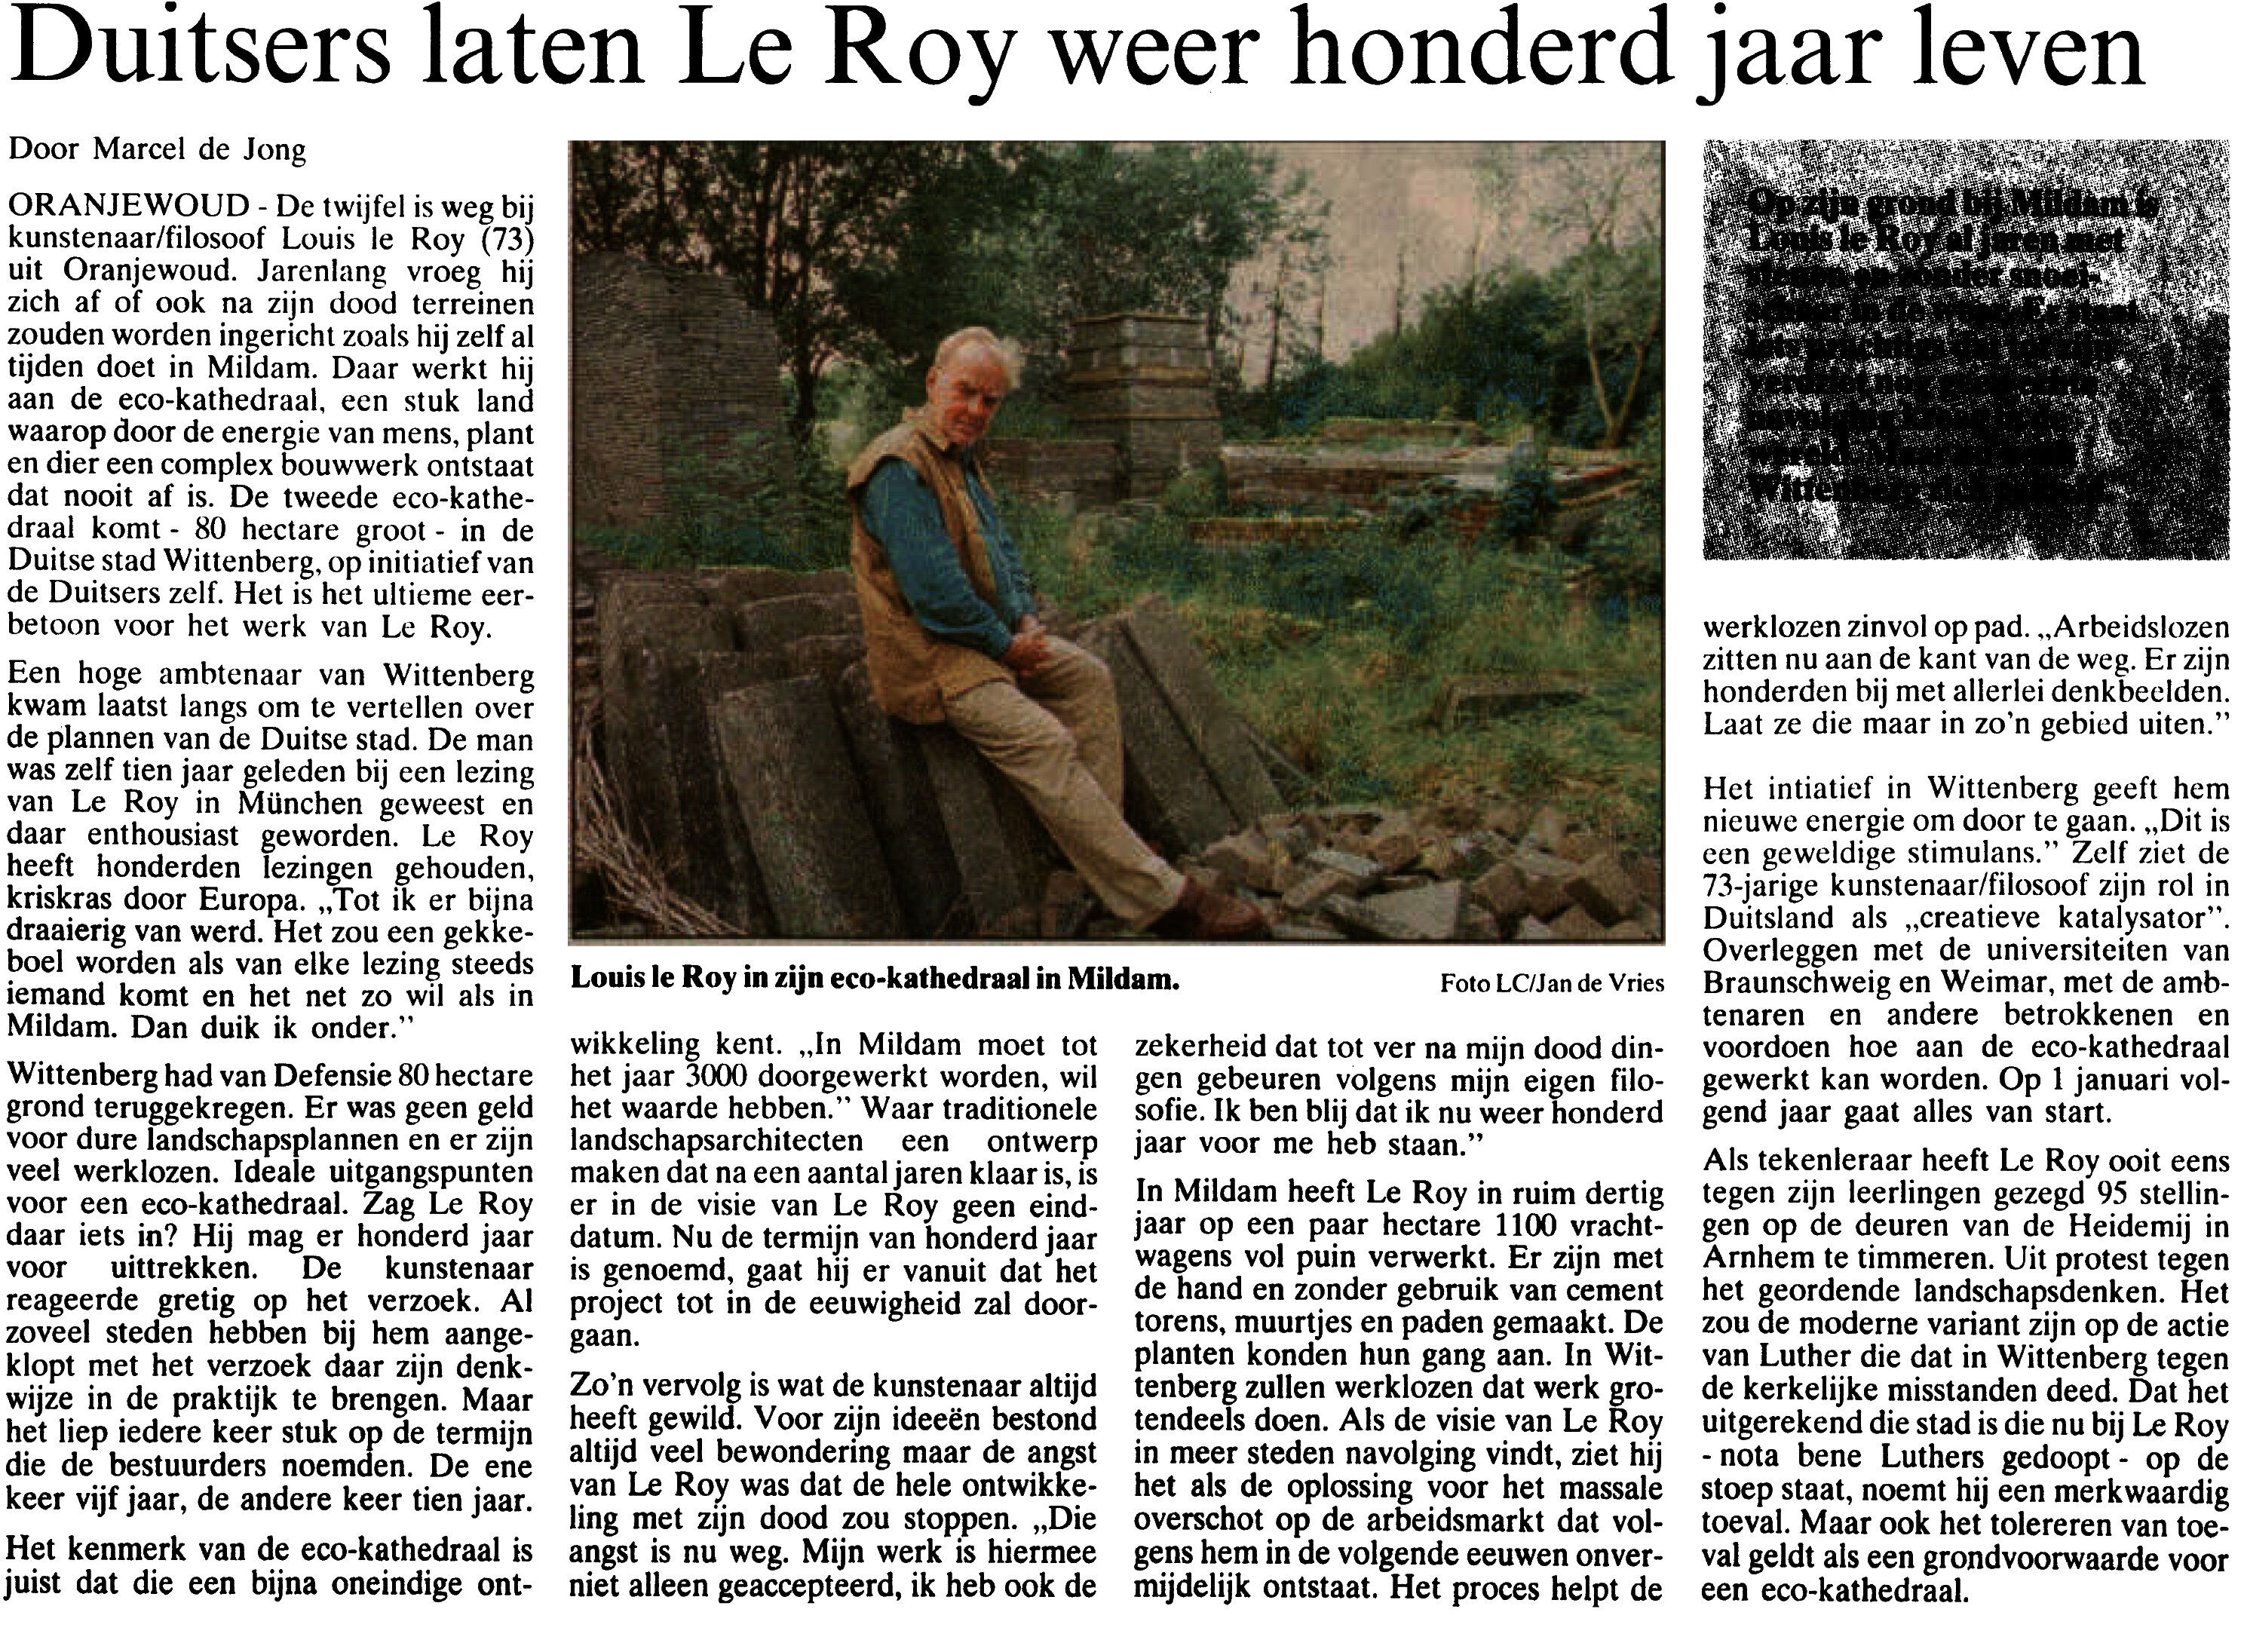 Duisters laten Le Roy weer 100 jaar leven